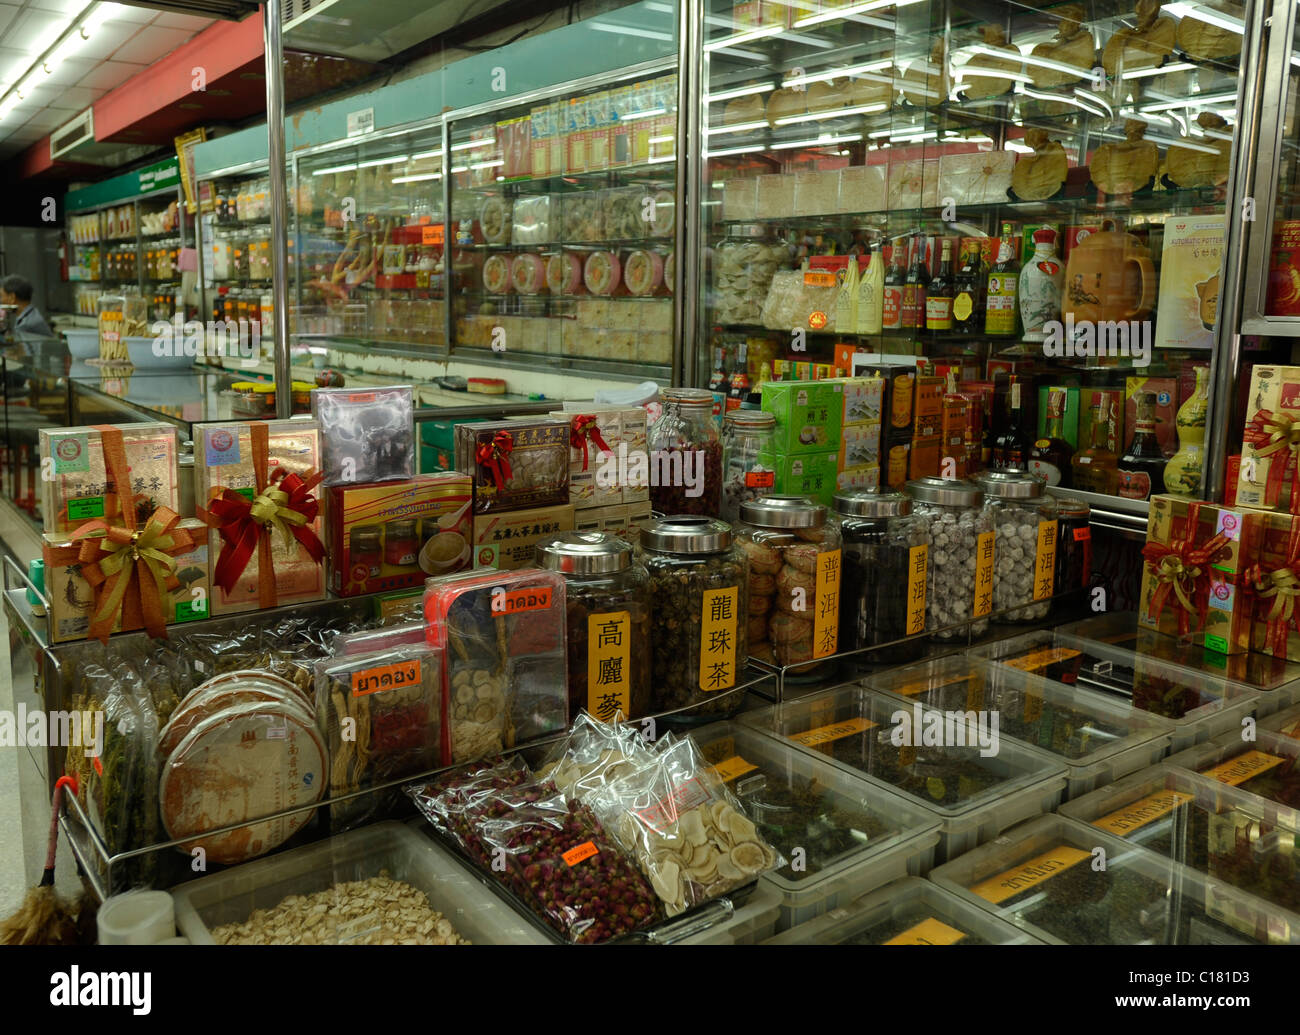 Boutique de produits chinois assortiment de produits chinois importés et locaux , Chinatown, Bangkok, Thaïlande Banque D'Images